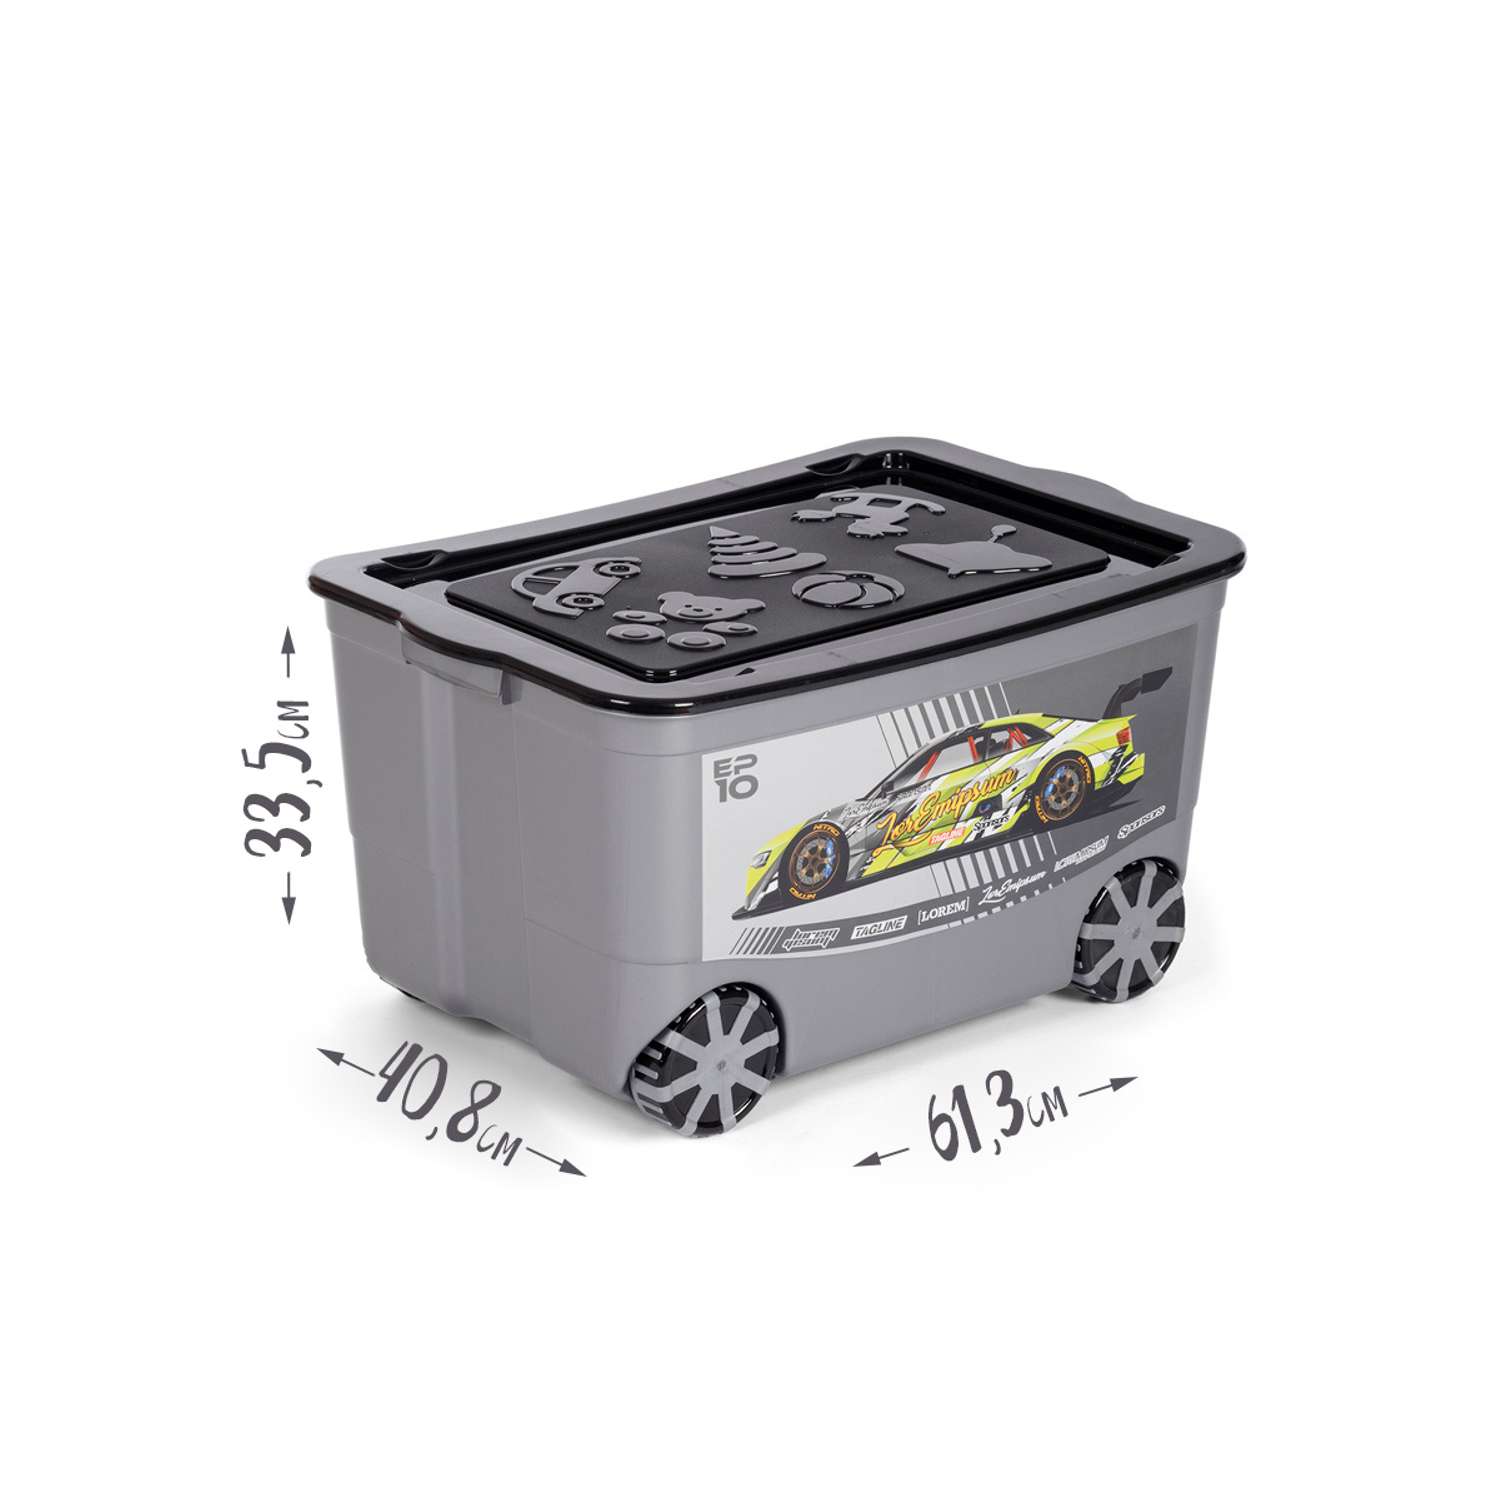 Ящик для игрушек elfplast KidsBox на колёсах темно серый черный - фото 7